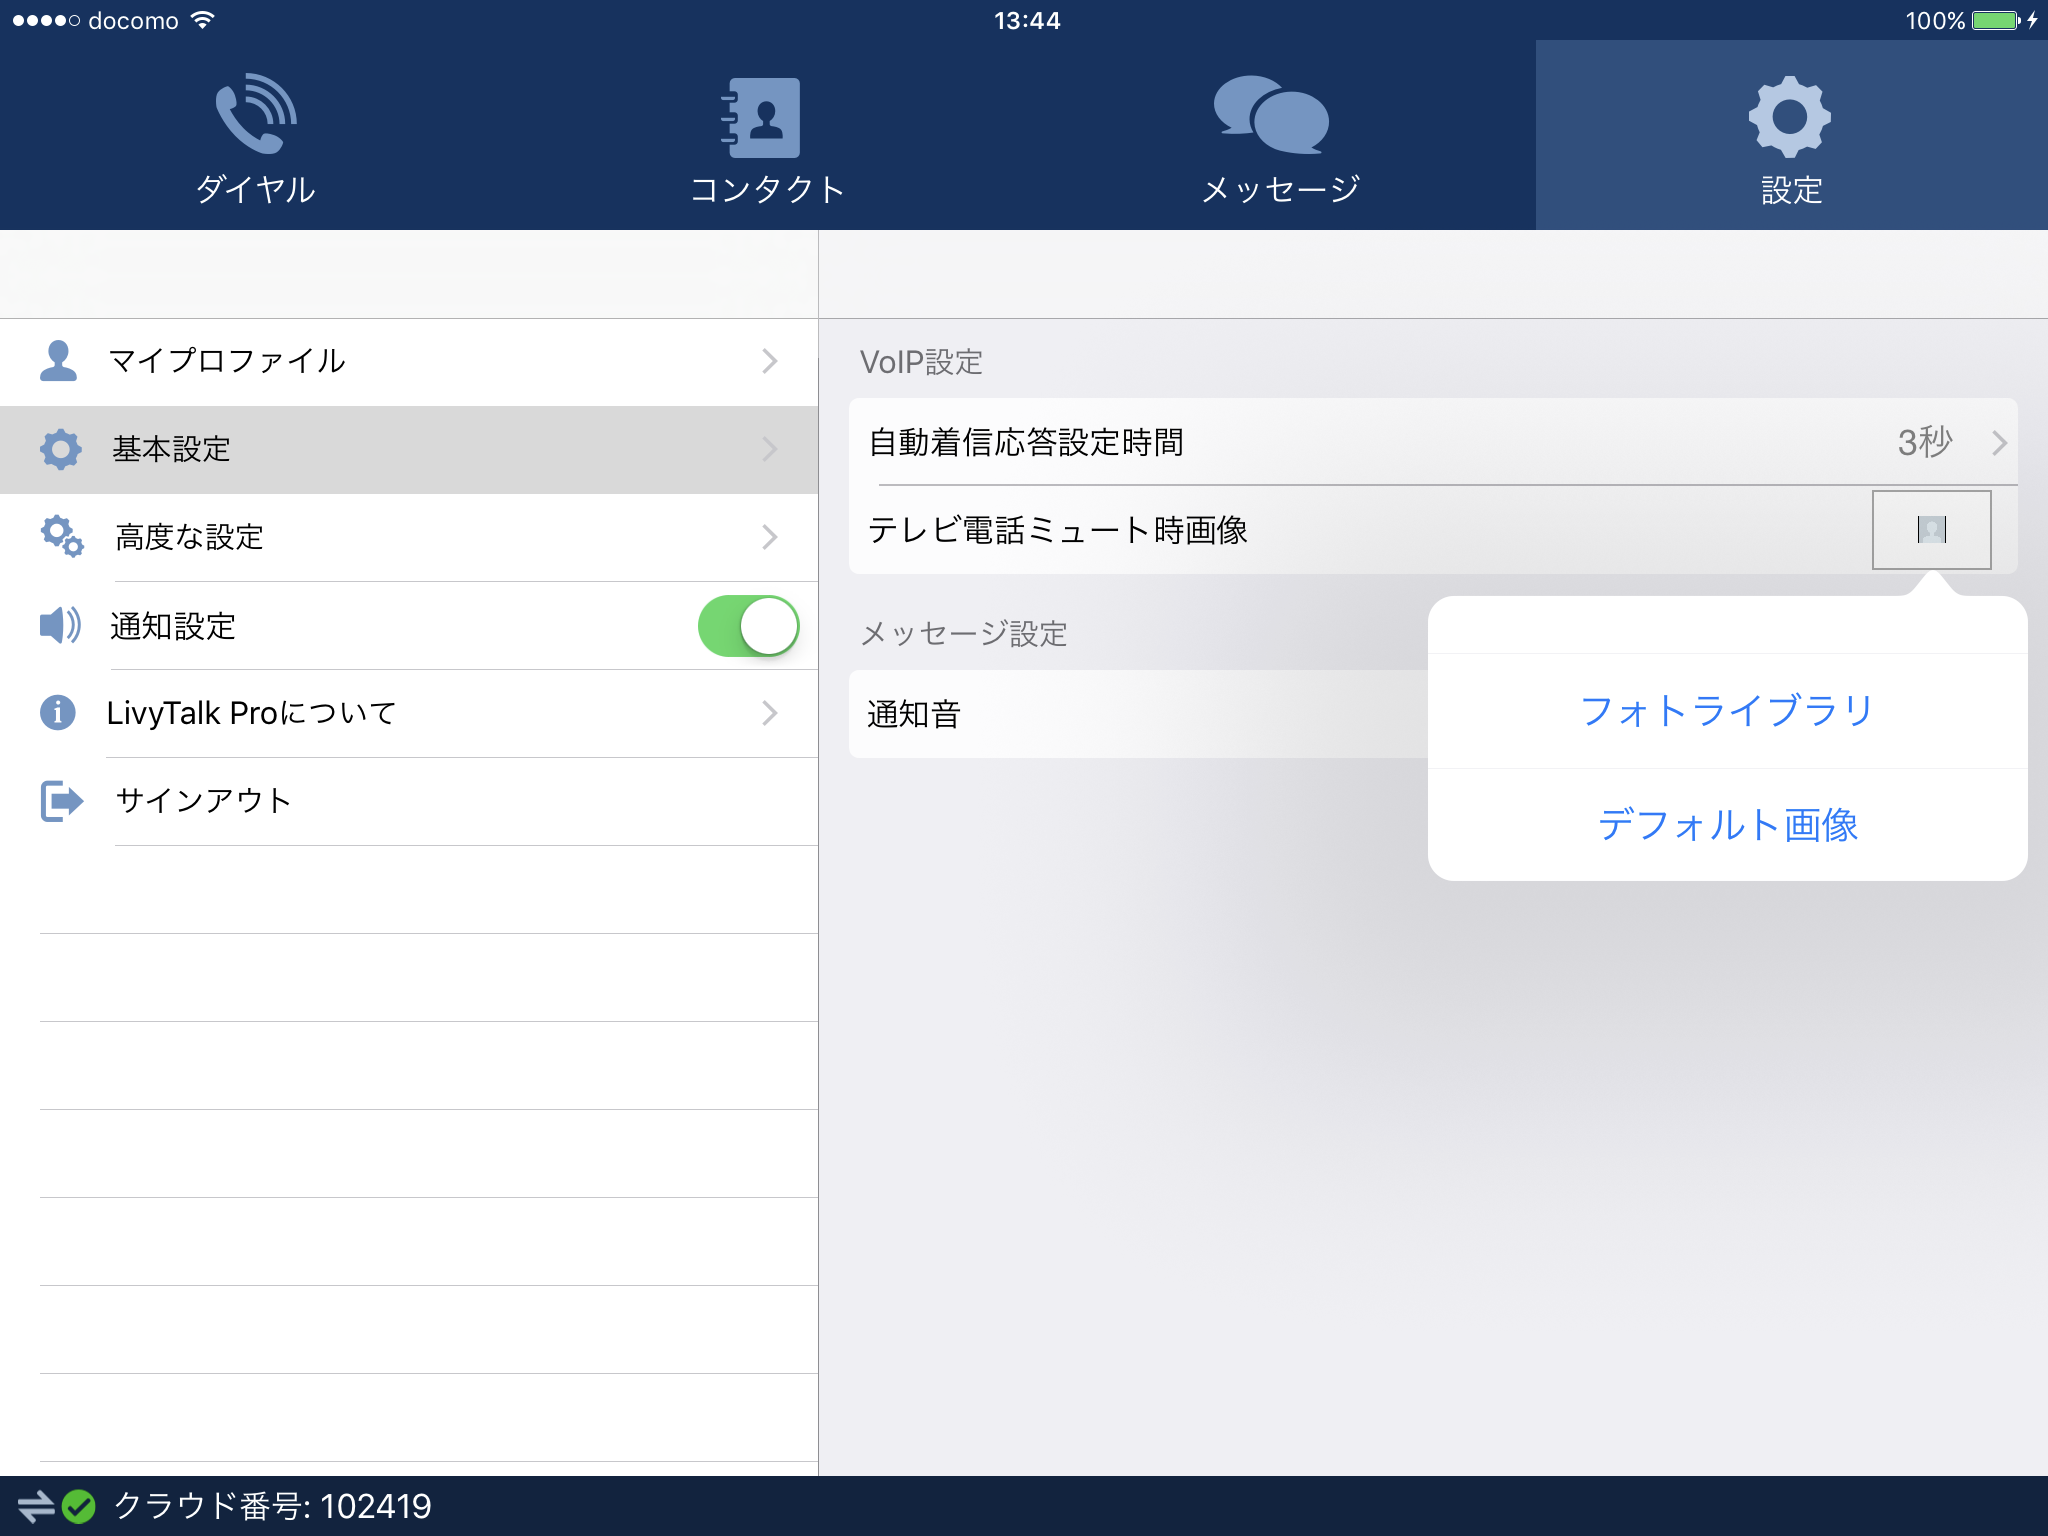 テレビ電話ミュート時画像(iOS)